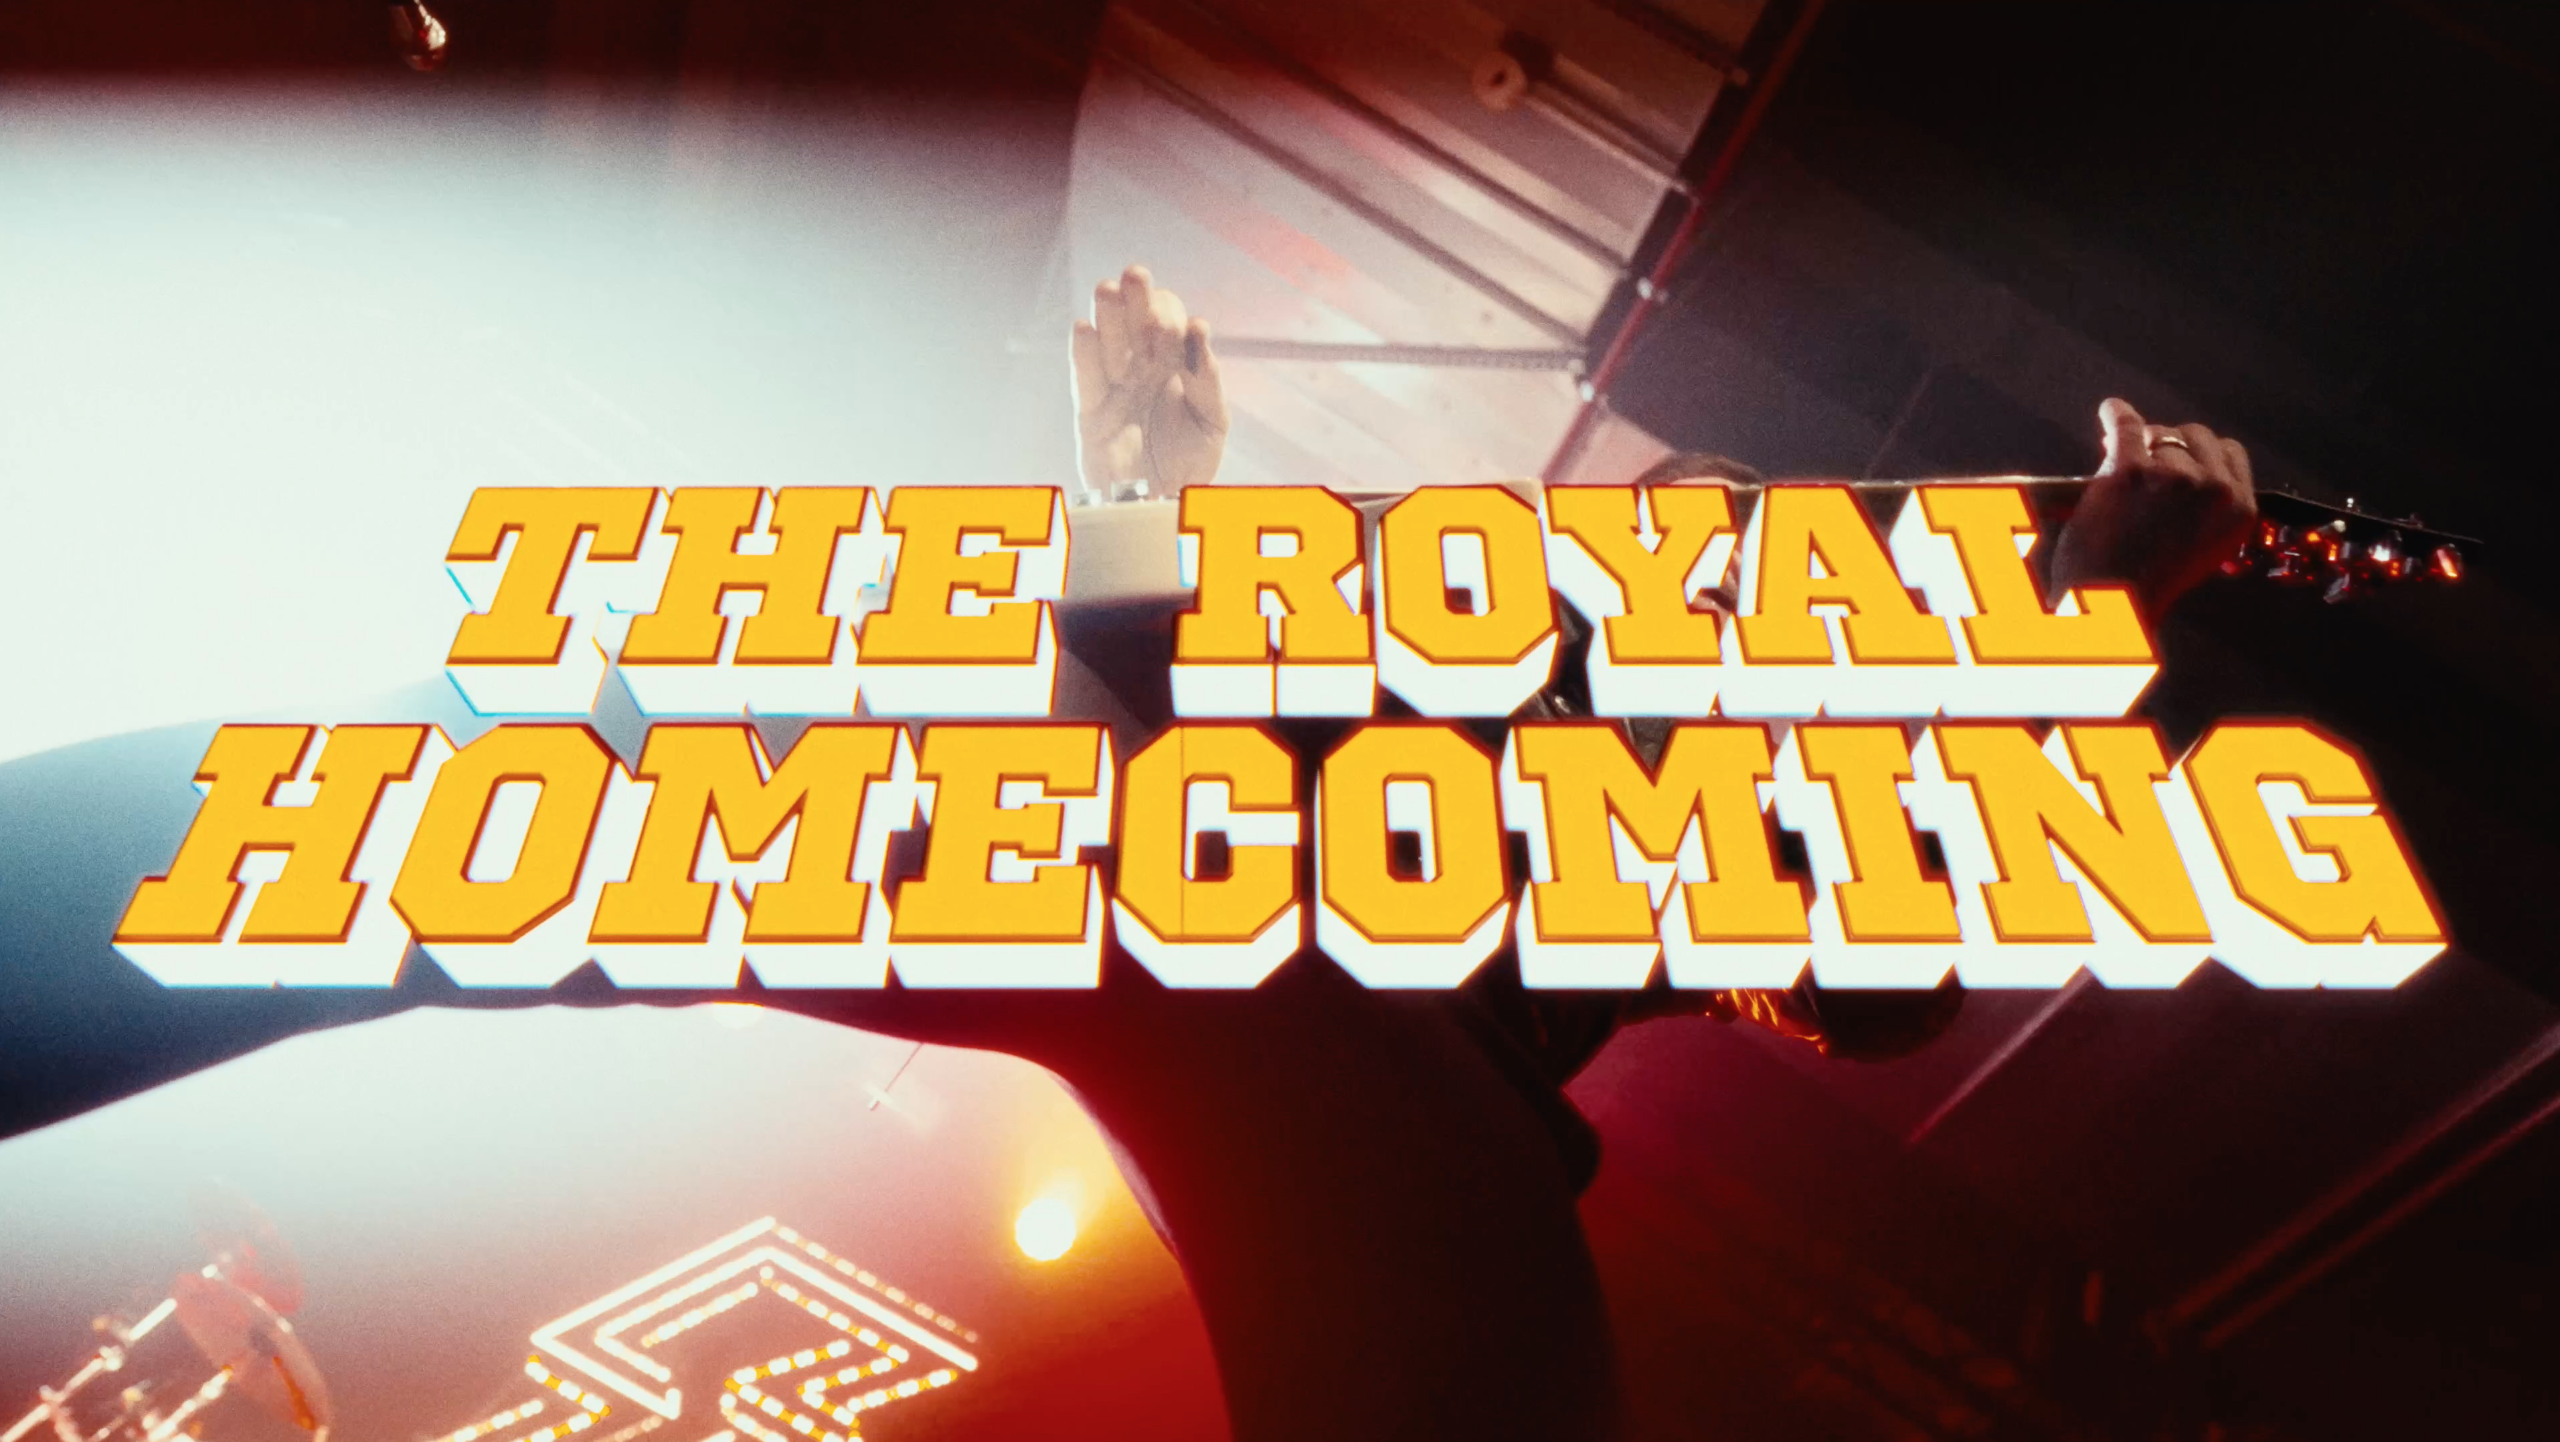 Royal Republic – The Royal Homecoming